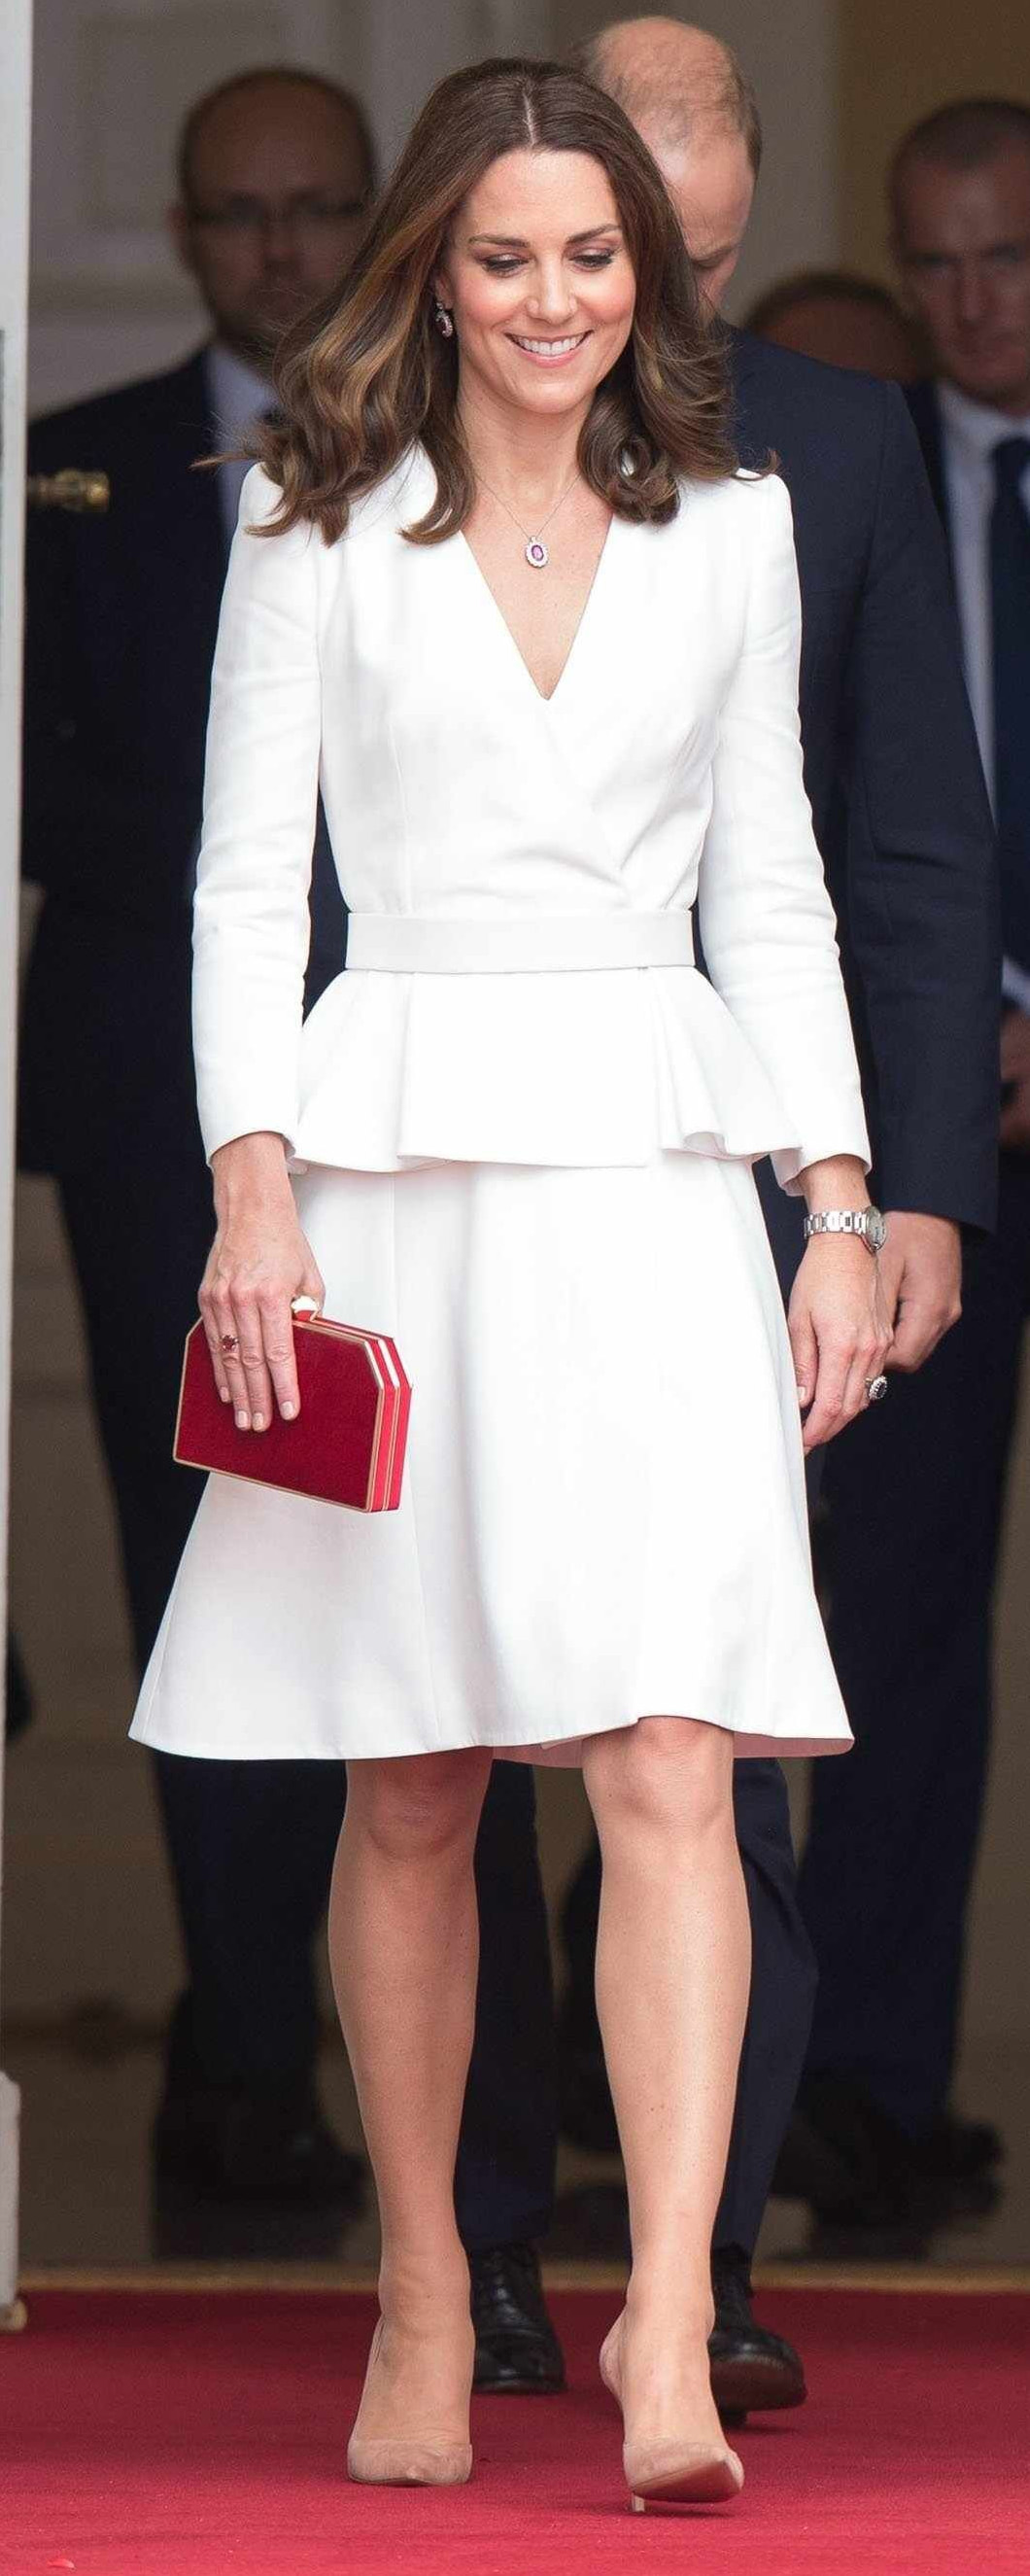 Alexander McQueen Ivory Peplum-Waist Coatdress as seen on Kate Middleton, The Duchess of Cambridge